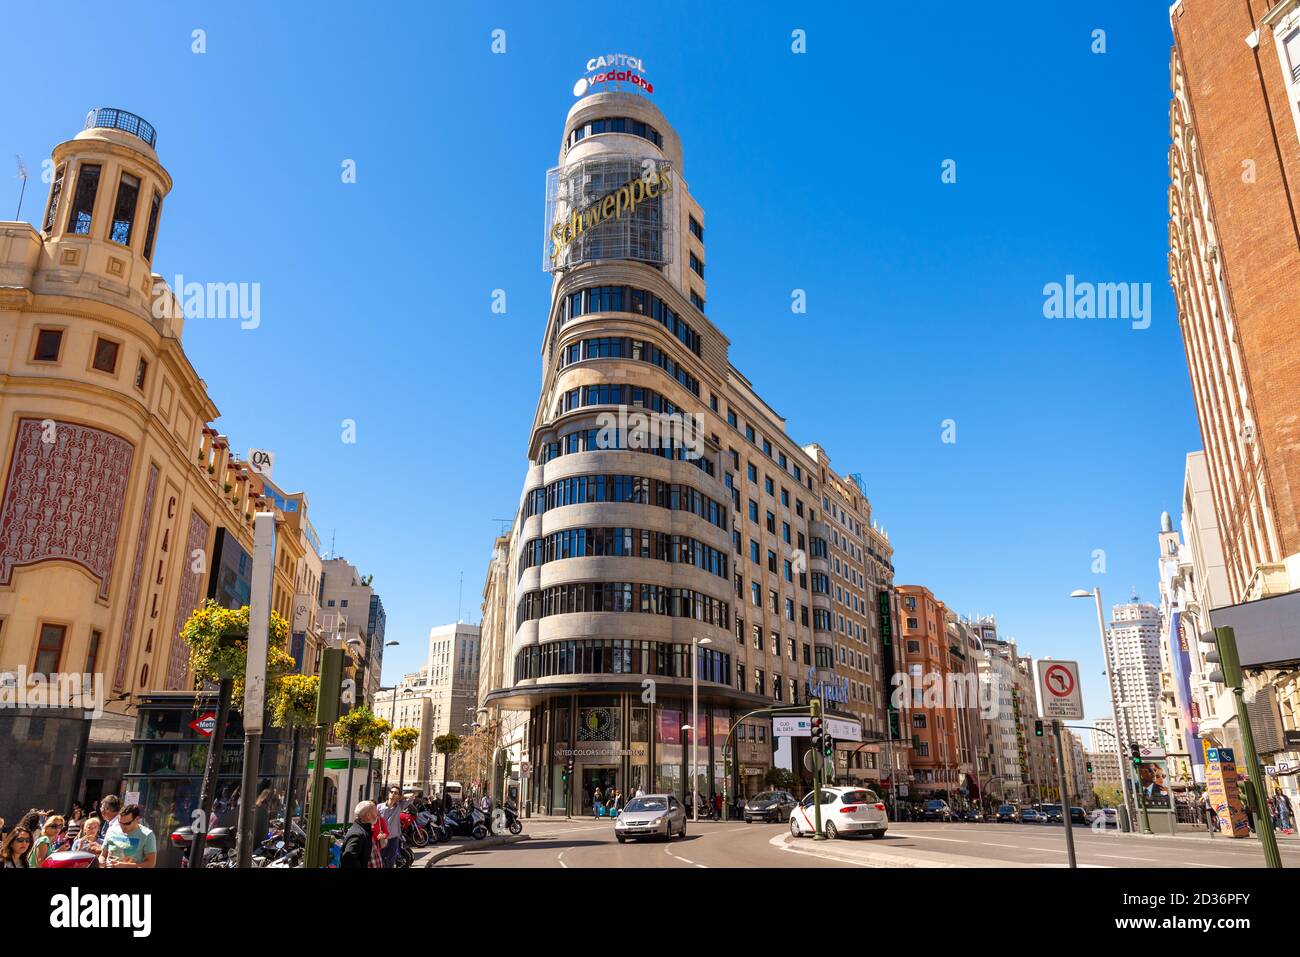 Bâtiment Schweppes ou Edificio Carrion sur Gran via, Madrid, Espagne Banque D'Images